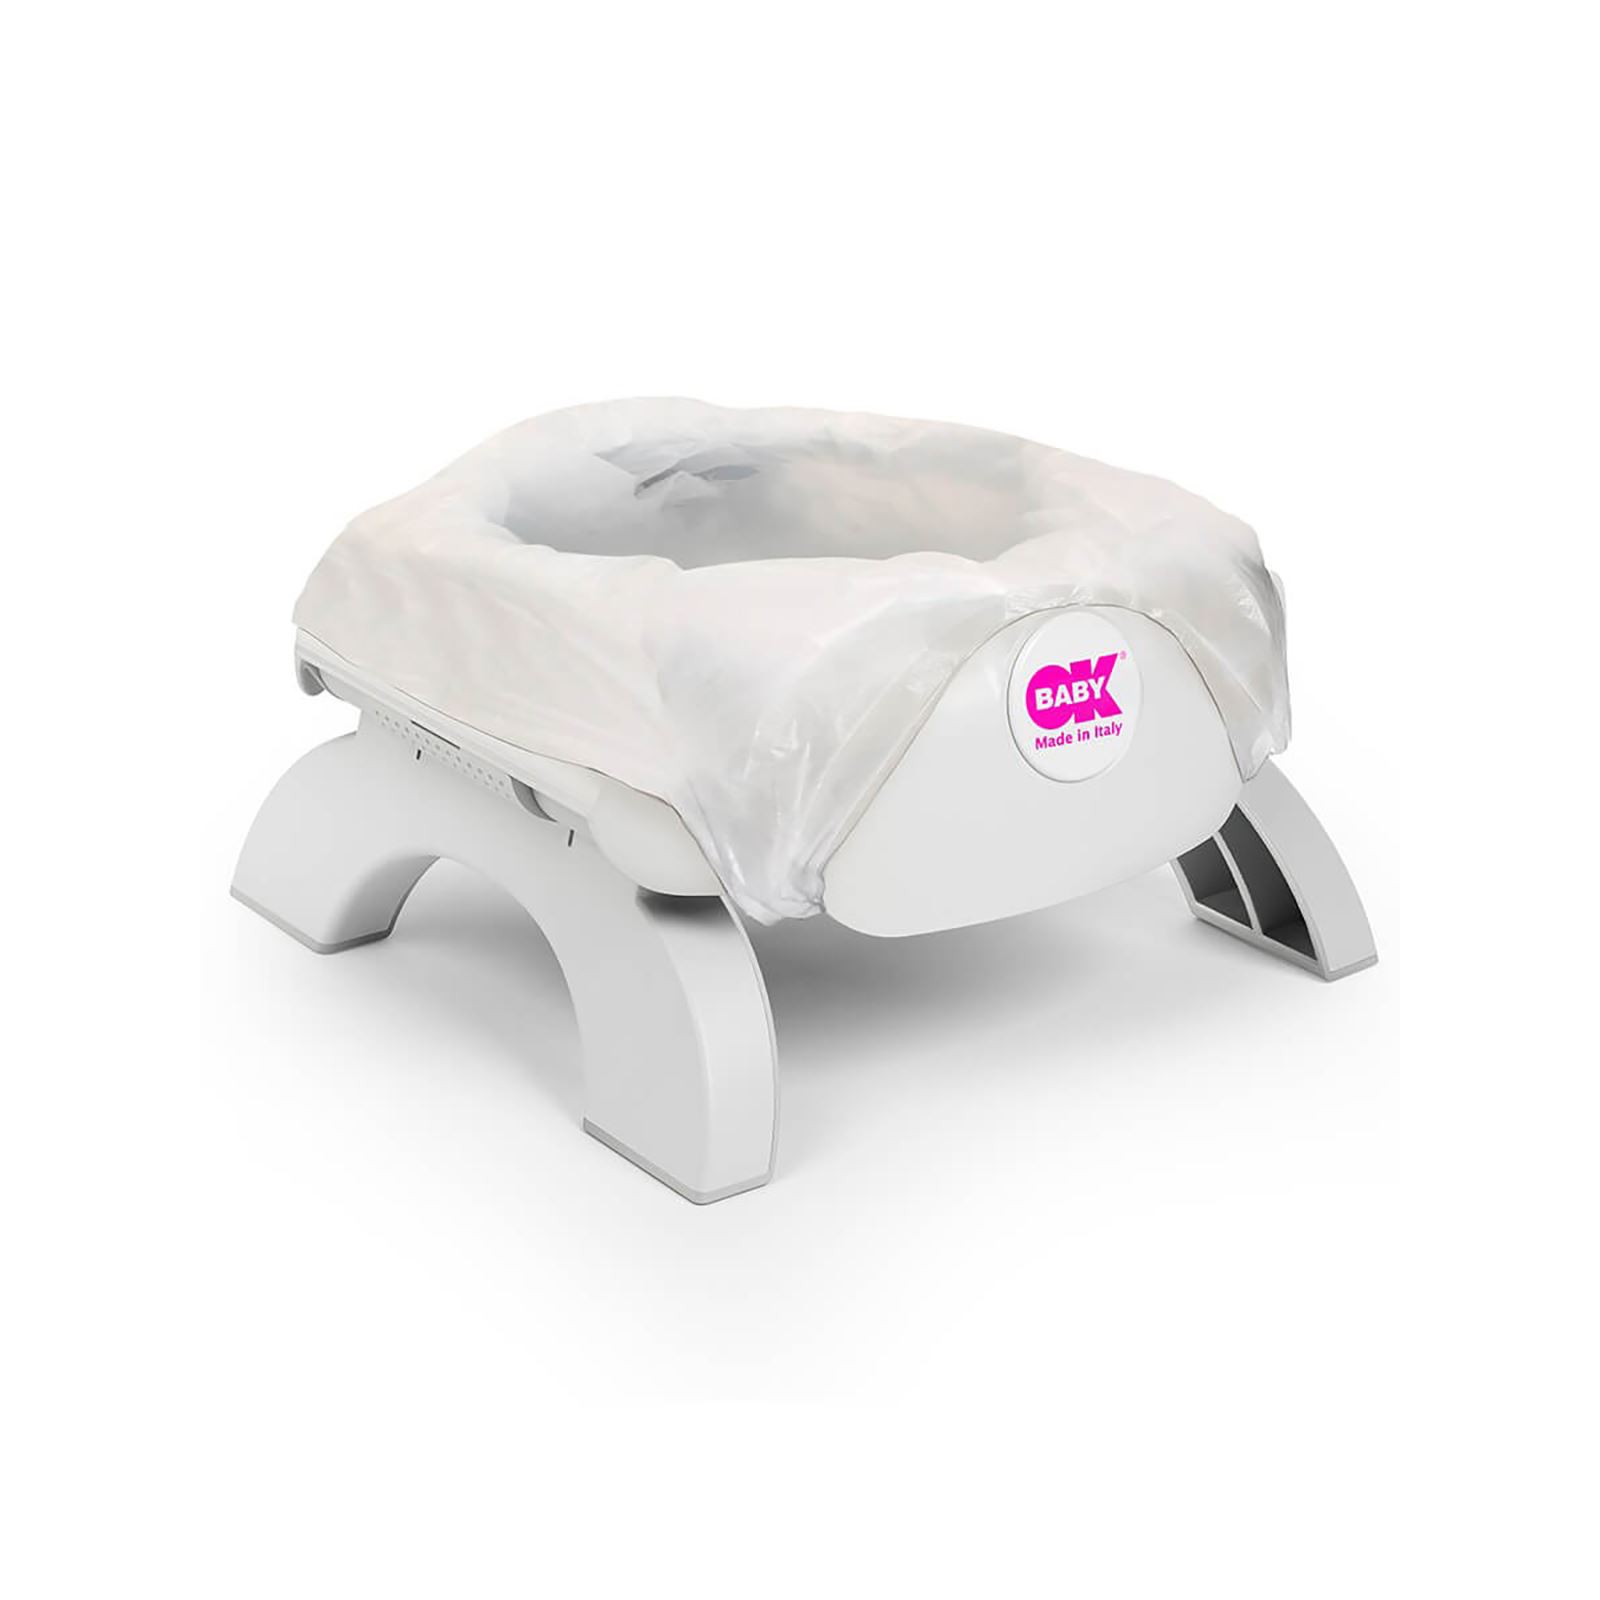 OkBaby Roady Katlanabilir Oturak ve Klozet Adaptörü & Disposable Bez Seti 30'lu / Beyaz